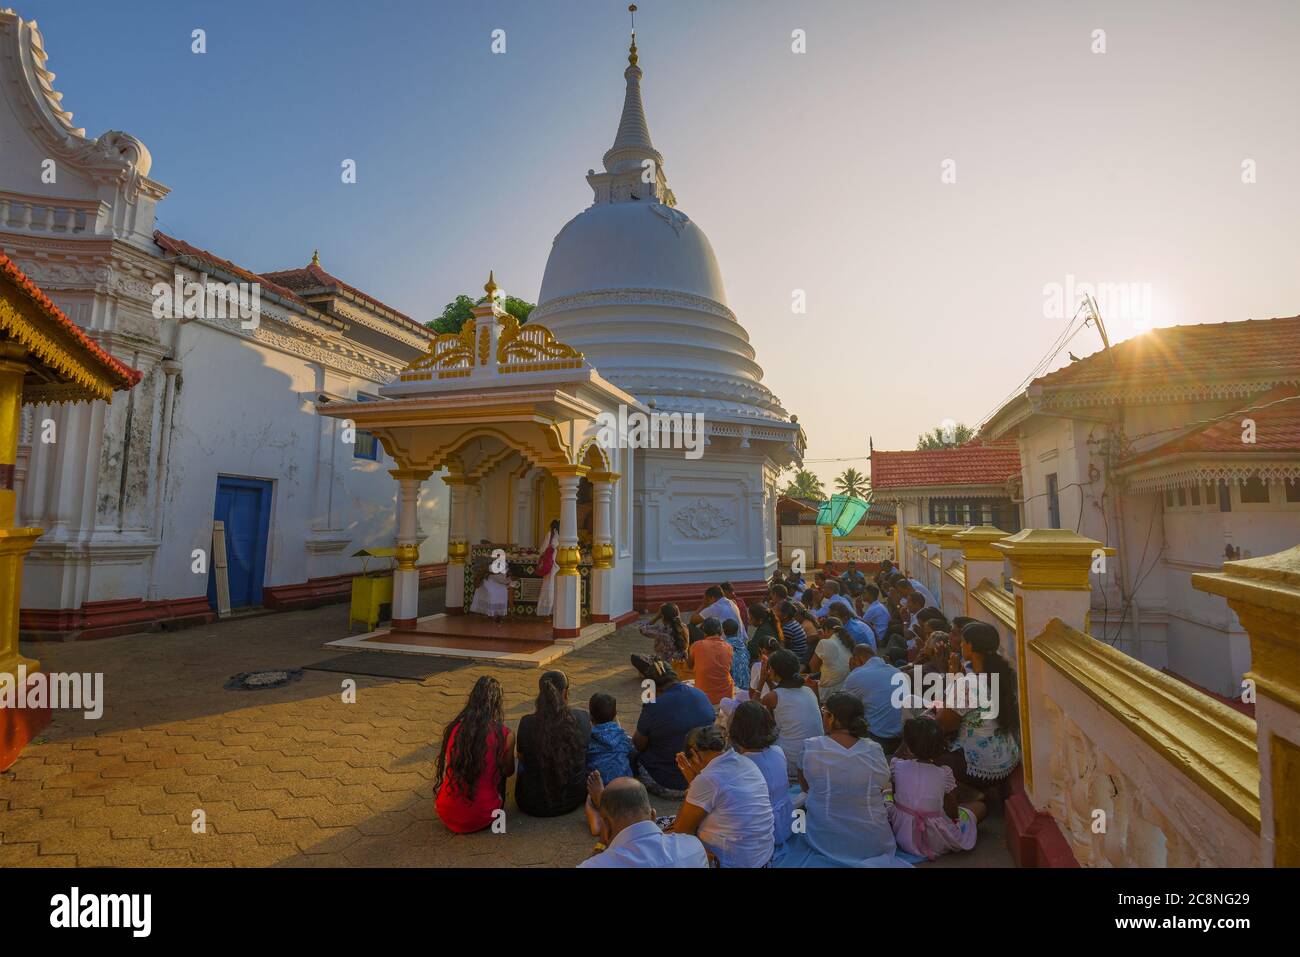 BERUWALA, SRI LANKA - 16. FEBRUAR 2020: Morgengebet im buddhistischen Tempel des Kande Viharaya Tempels Stockfoto